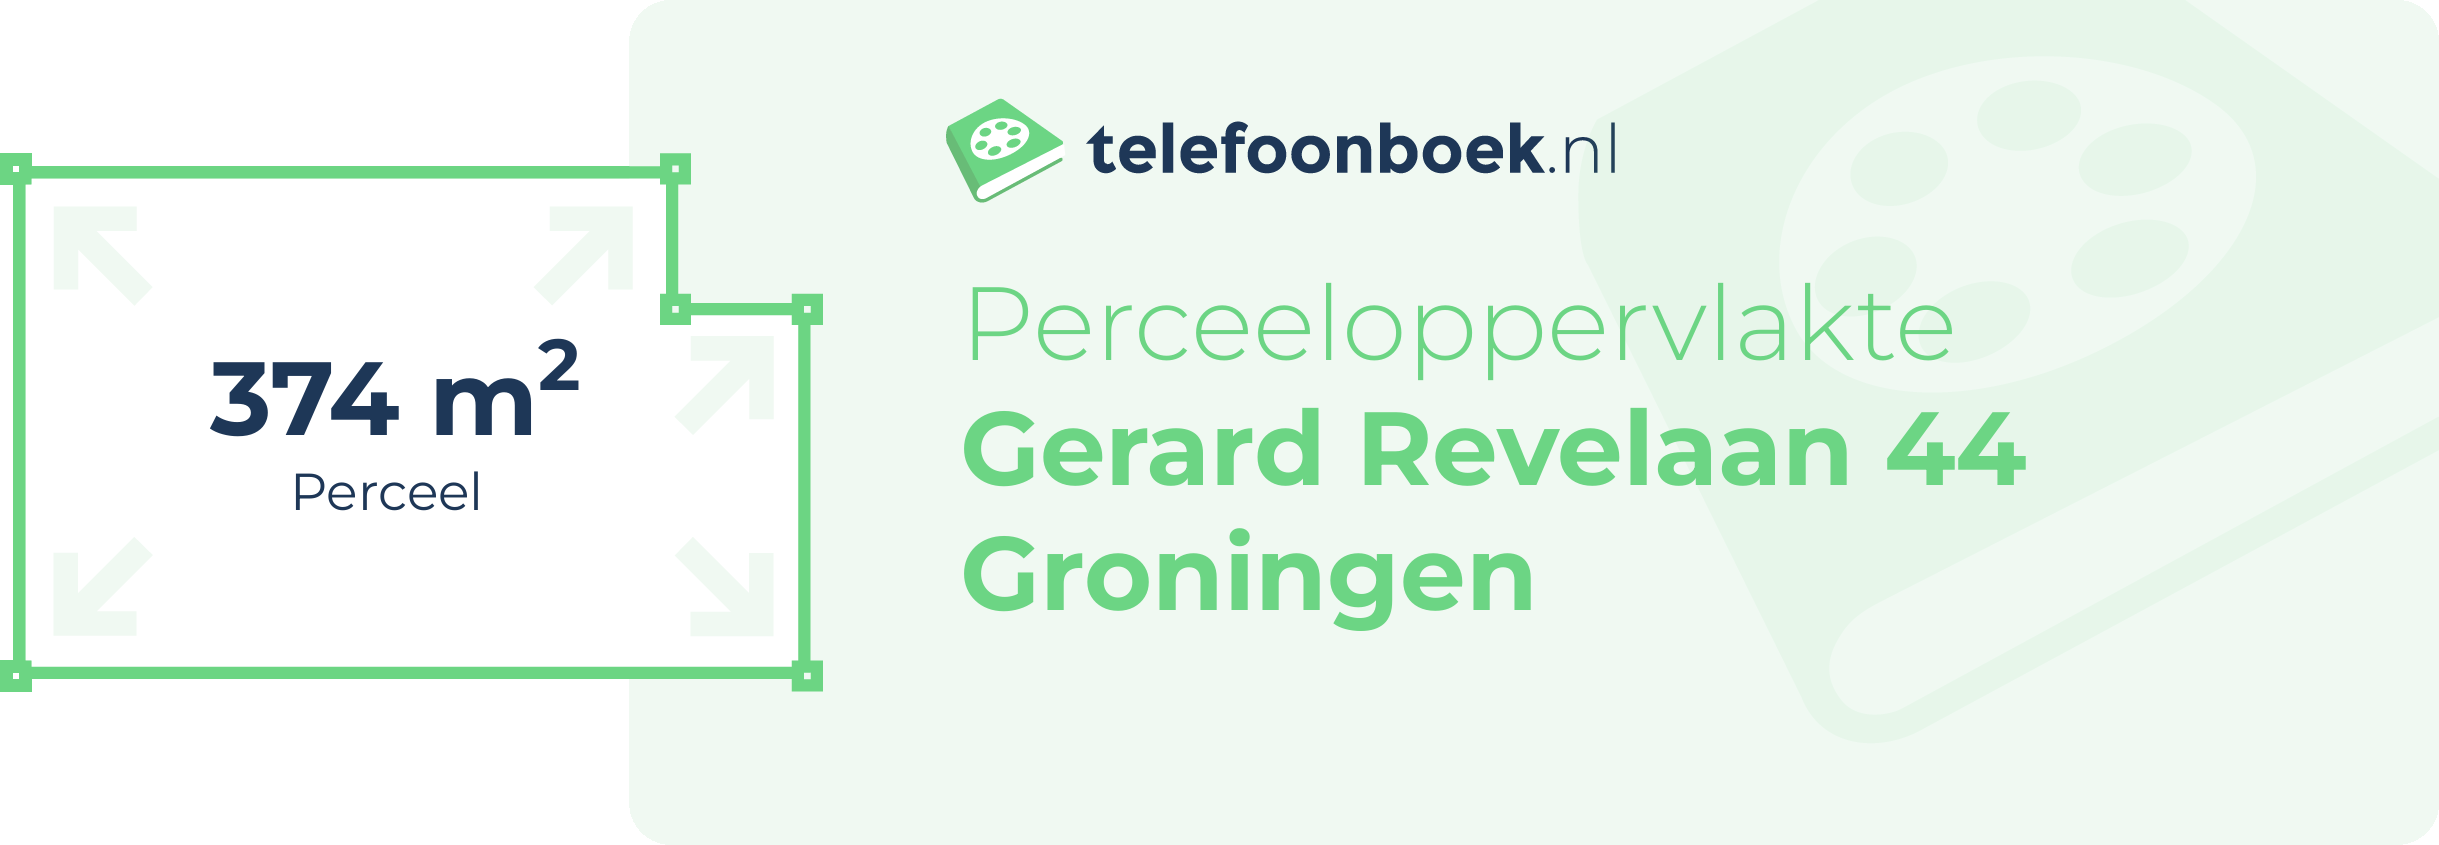 Perceeloppervlakte Gerard Revelaan 44 Groningen